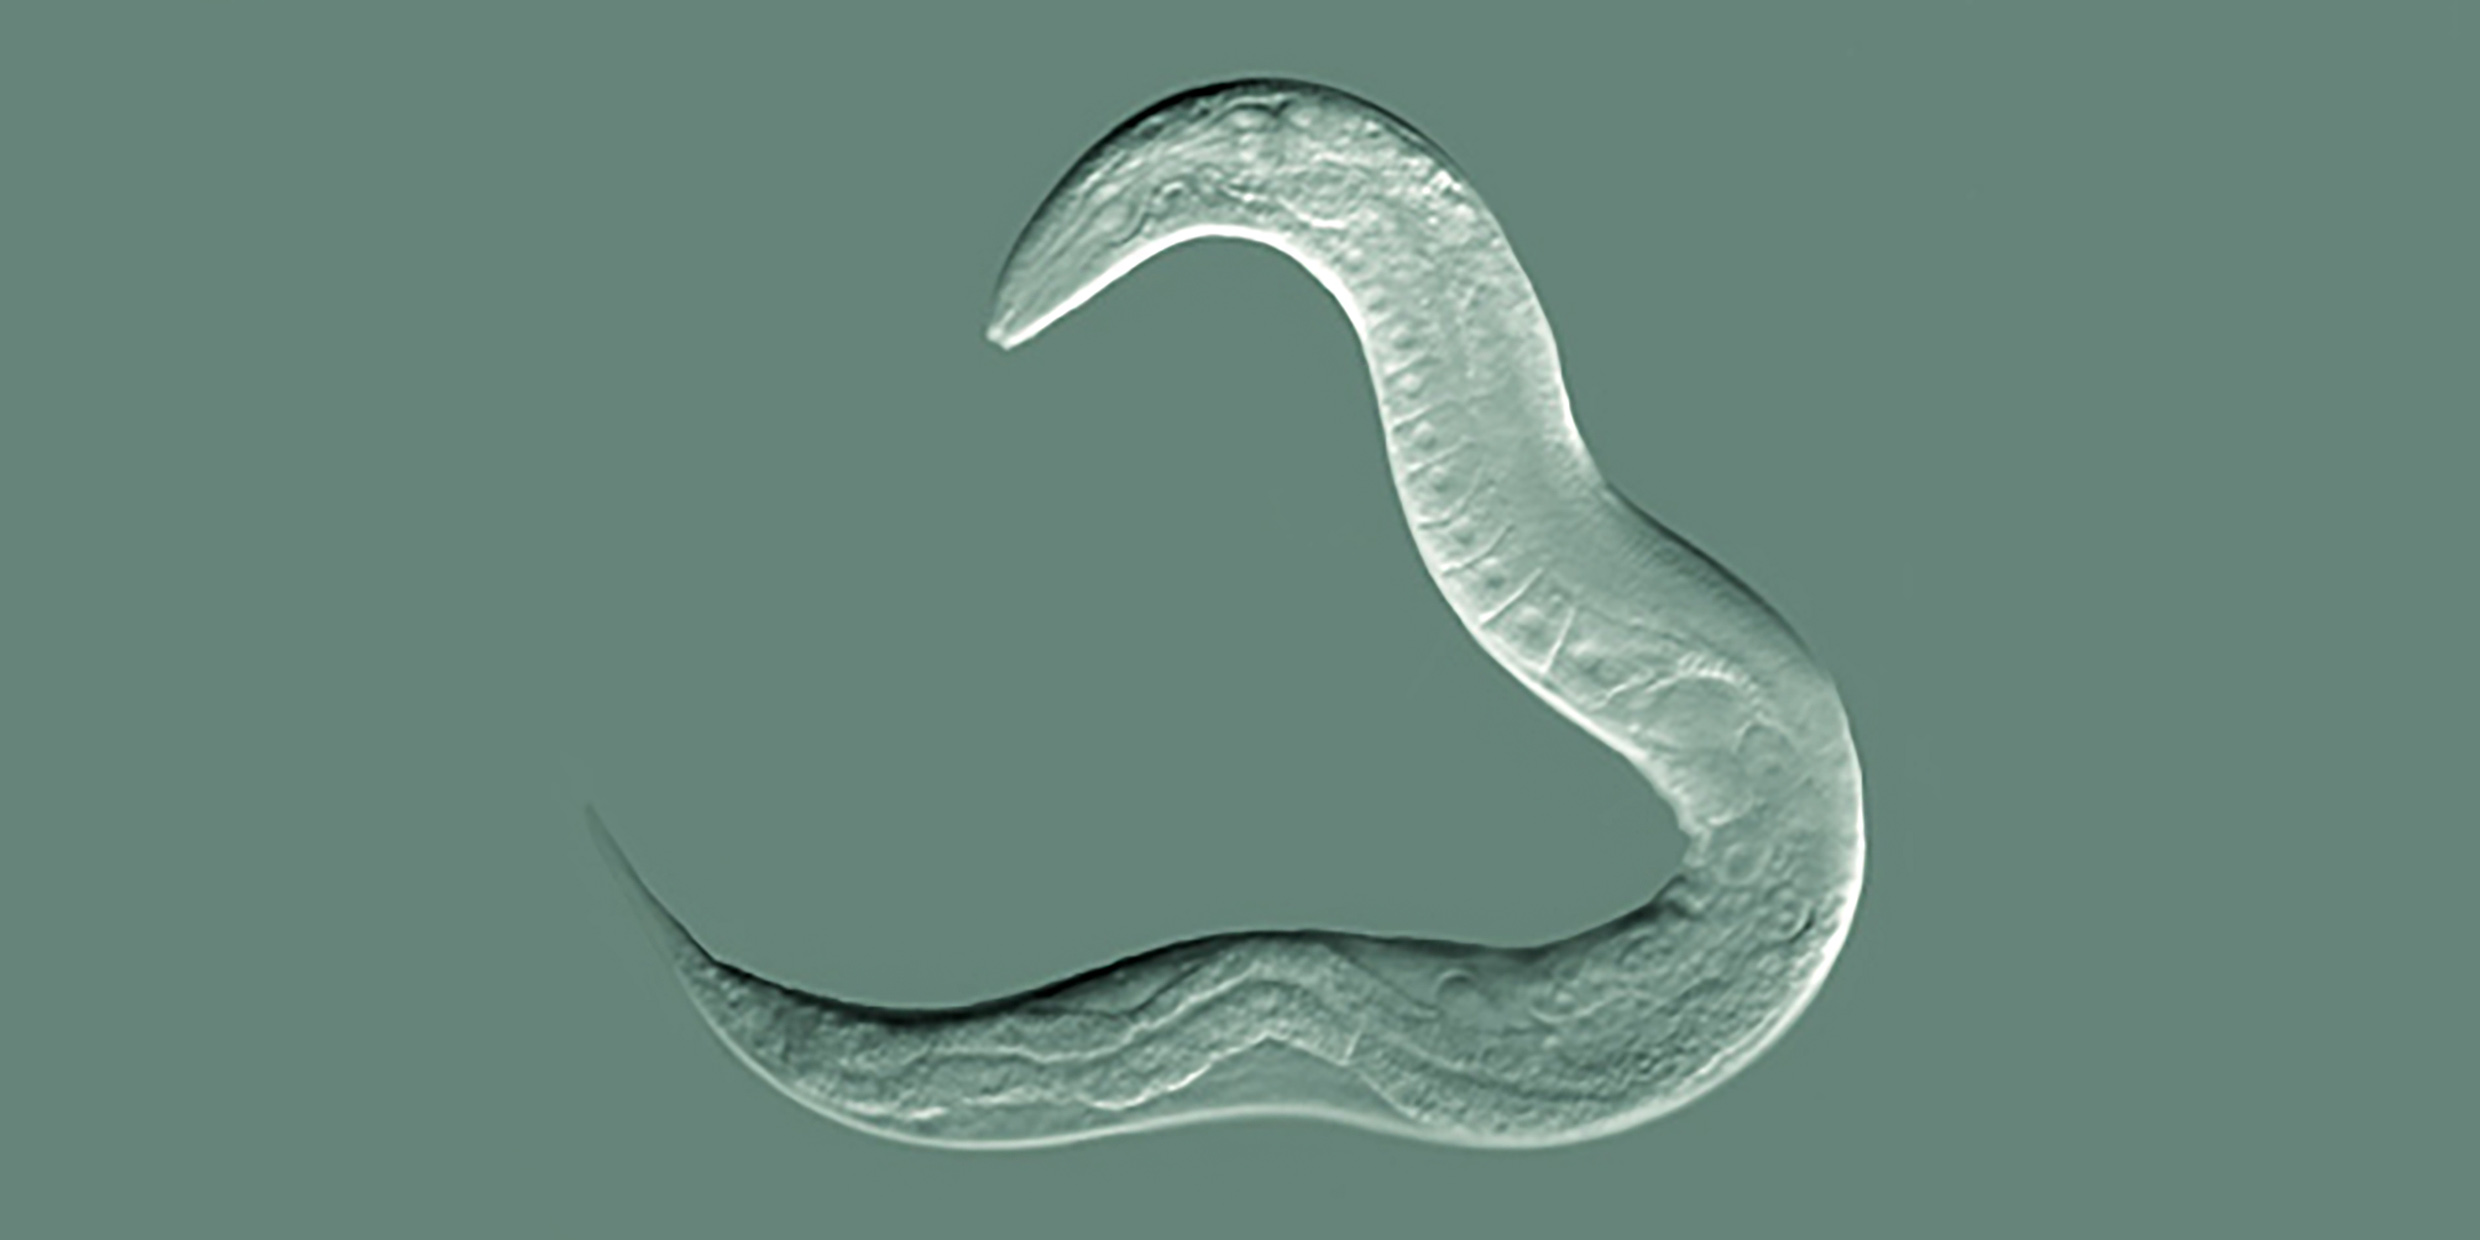 Image of Caenorhabditis elegans